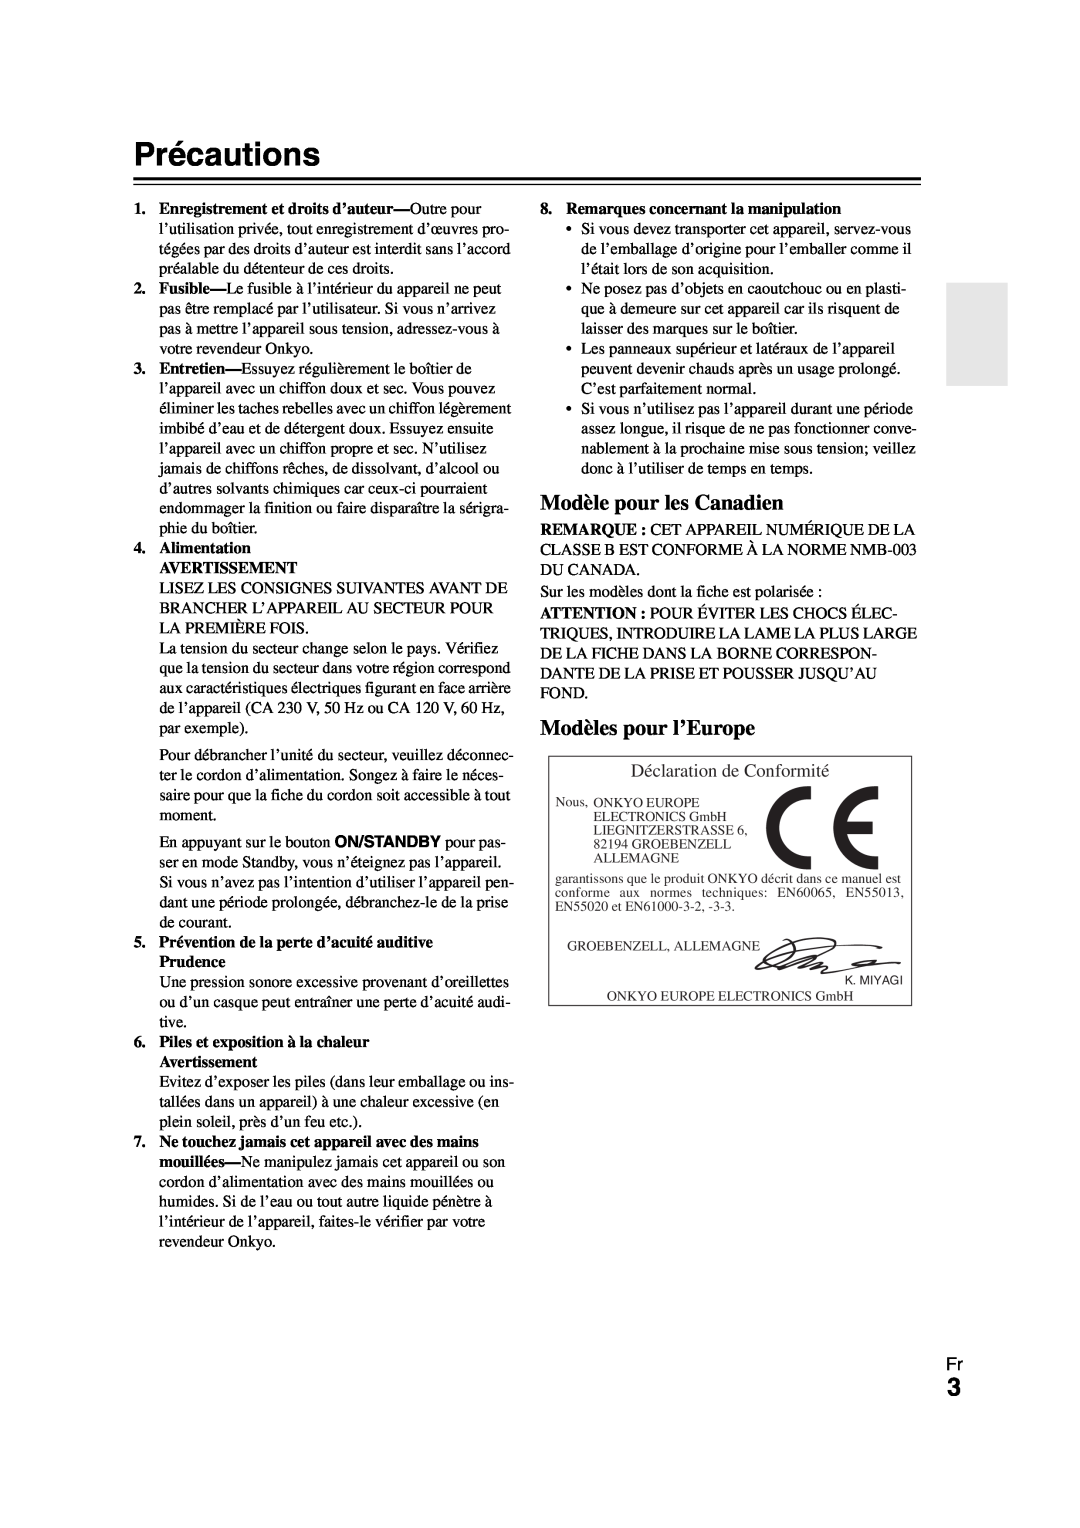 Onkyo HT-R980 instruction manual Précautions, Modèles pour l’Europe, Déclaration de Conformité, Modèle pour les Canadien 